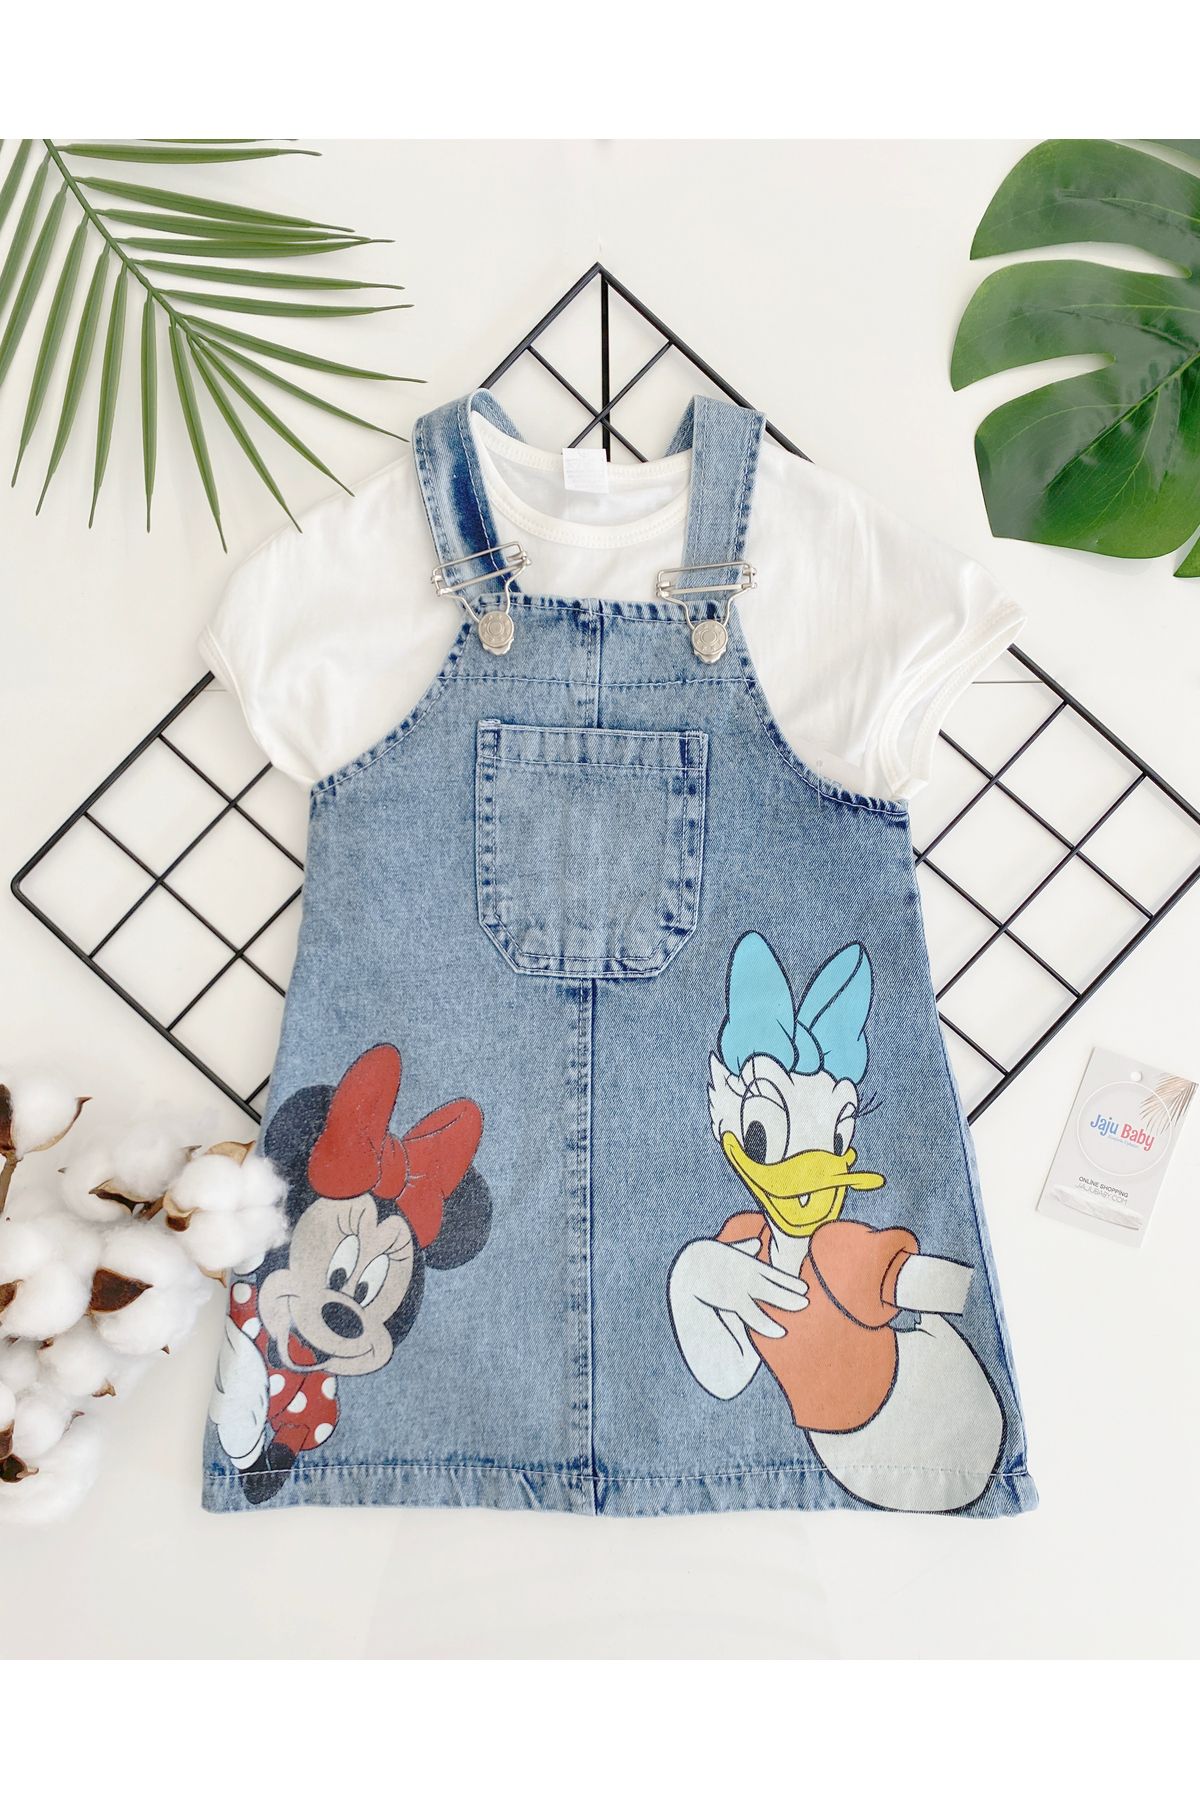 Jaju Baby Kız Çocuk Mickey Mouse Ve Daisy Duck Desenli Kot Salopet Elbise Ve Body Takım